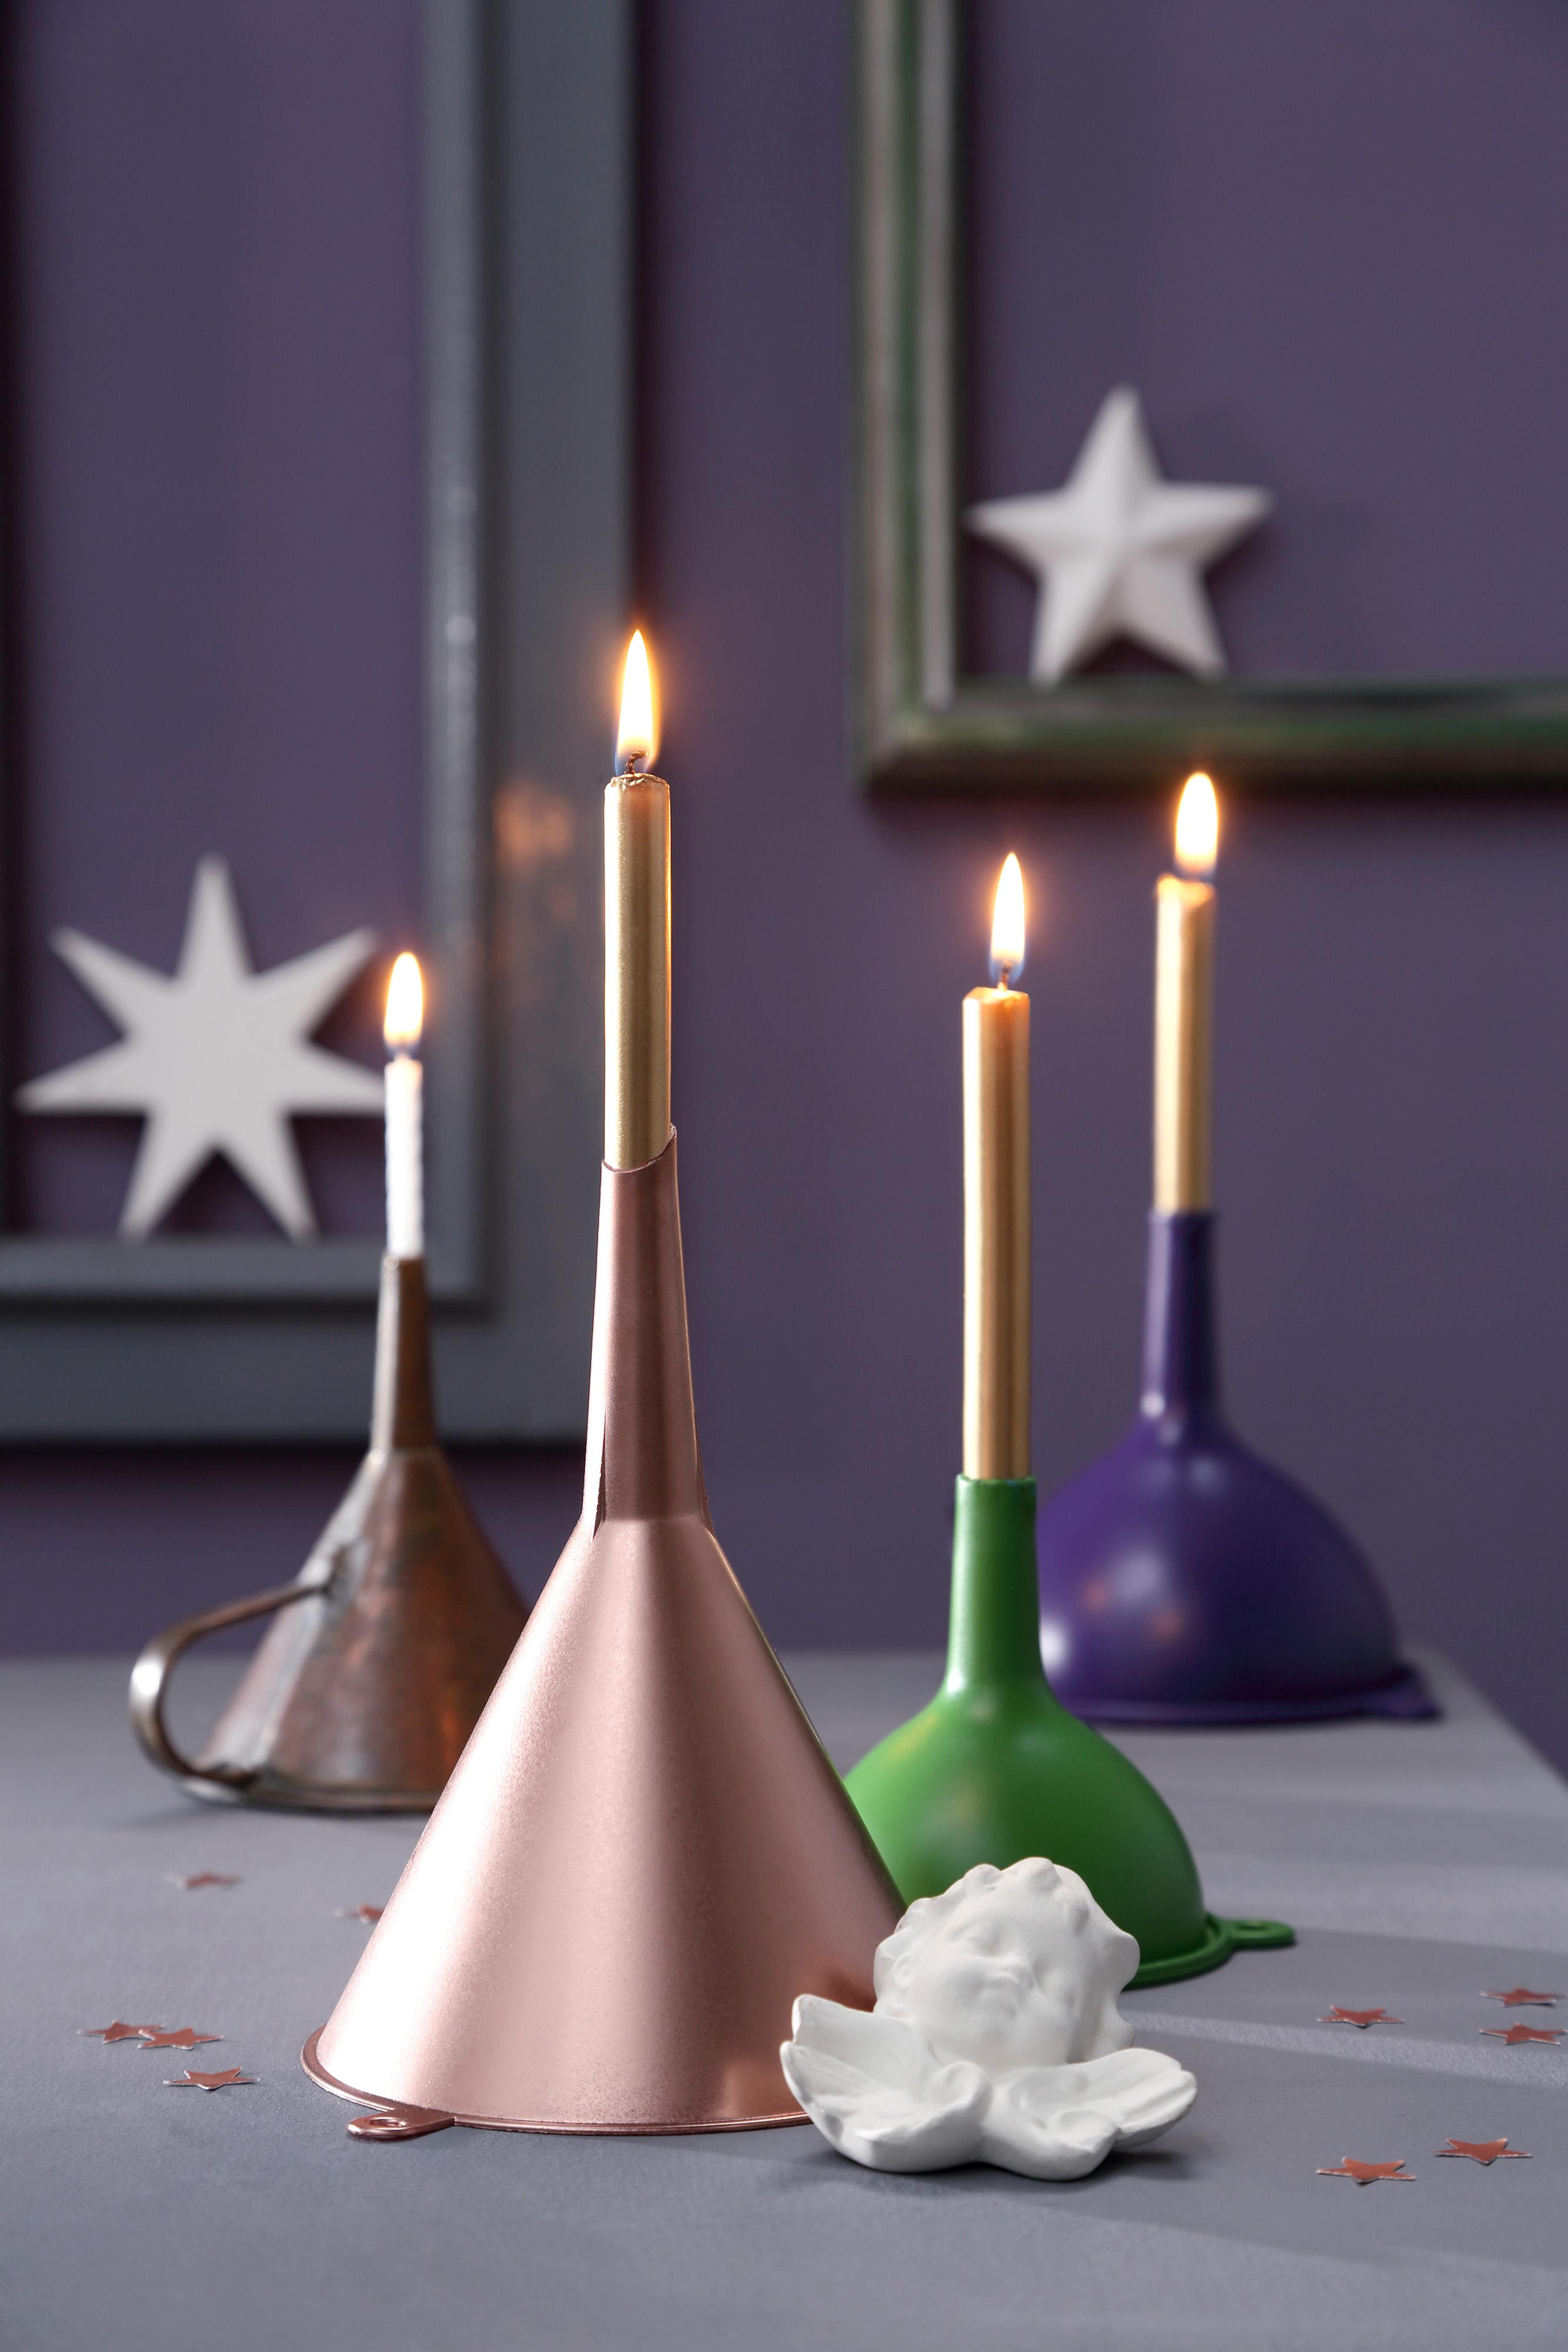 DIY: Kerzenhalter für Weihnachten basteln #bastelidee #diy #dekoidee #weihnachtsdeko #upcycling #tischdekoweihnachten ©Thordis Rüggeberg für roomido